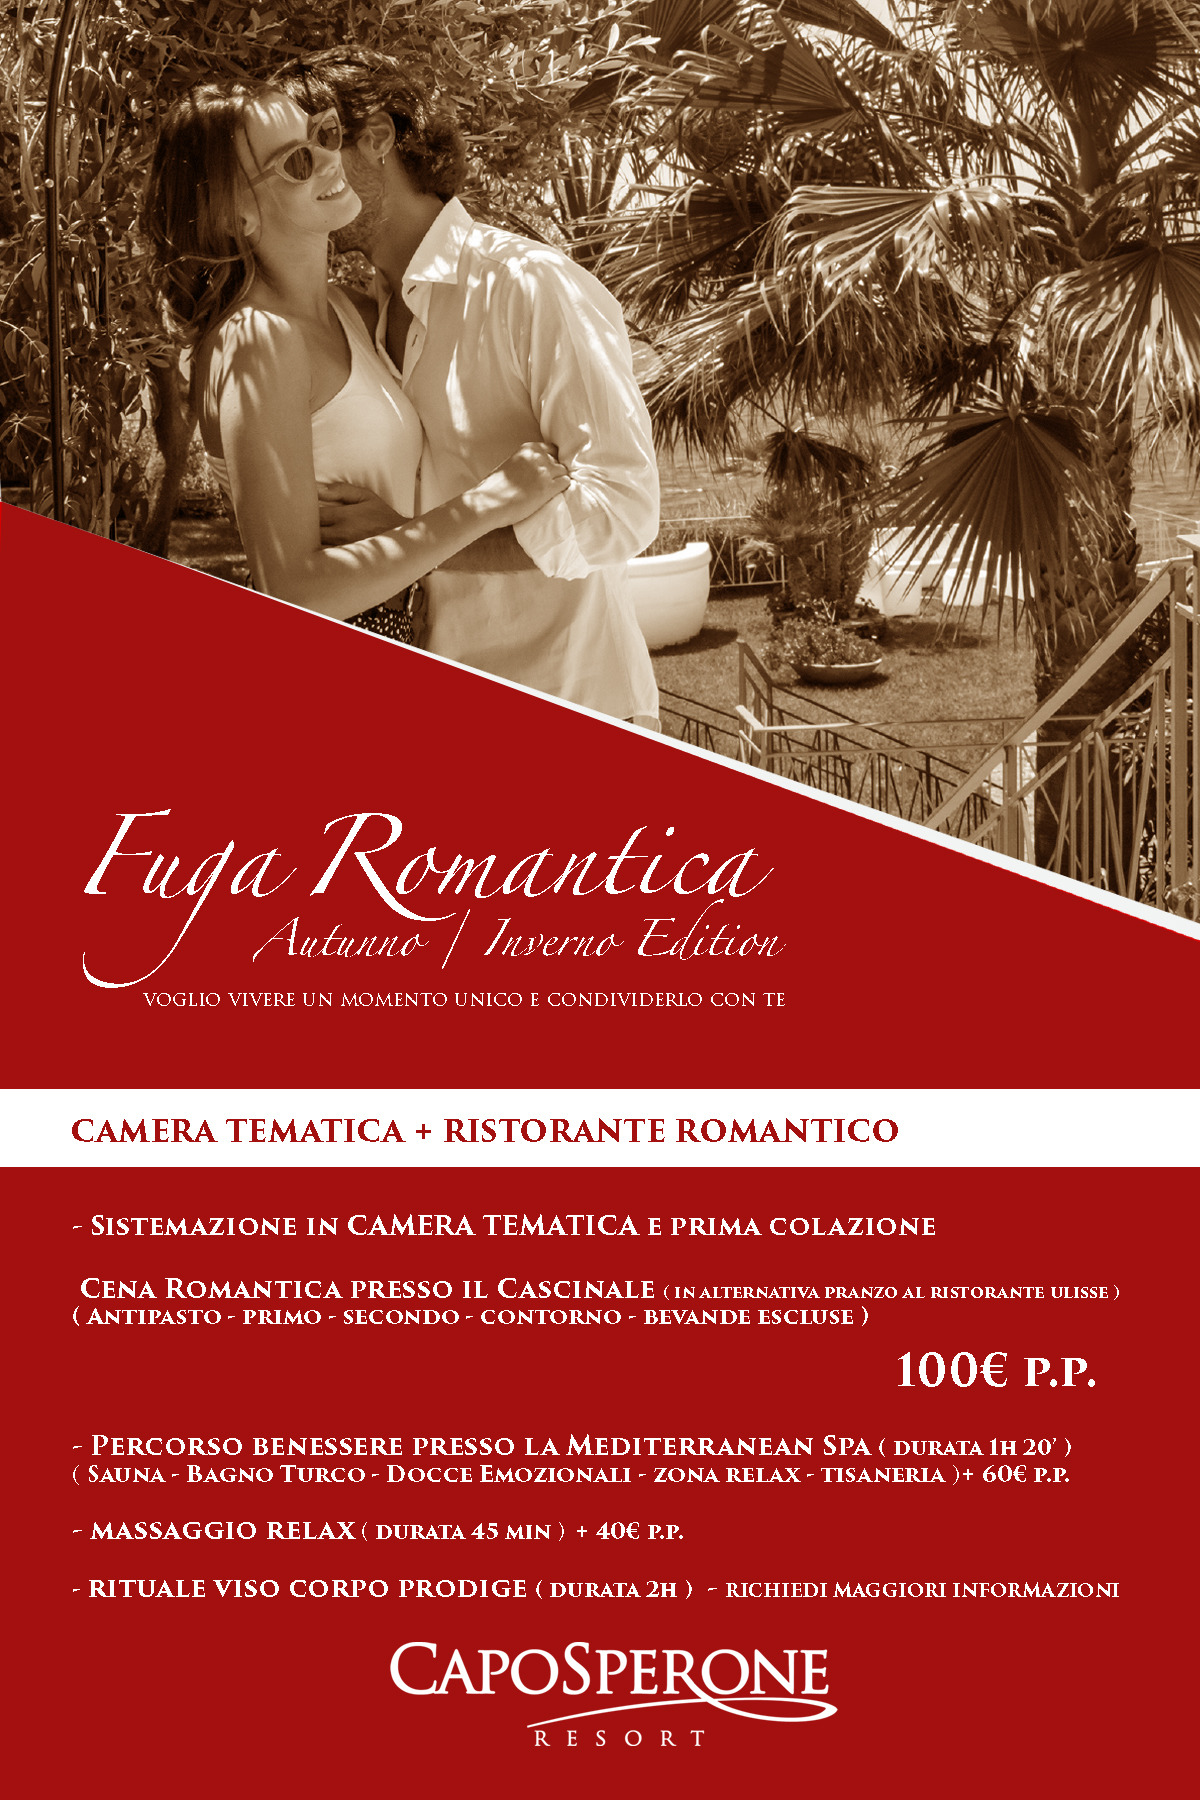 Fuga Romantica Inverno Edition 4